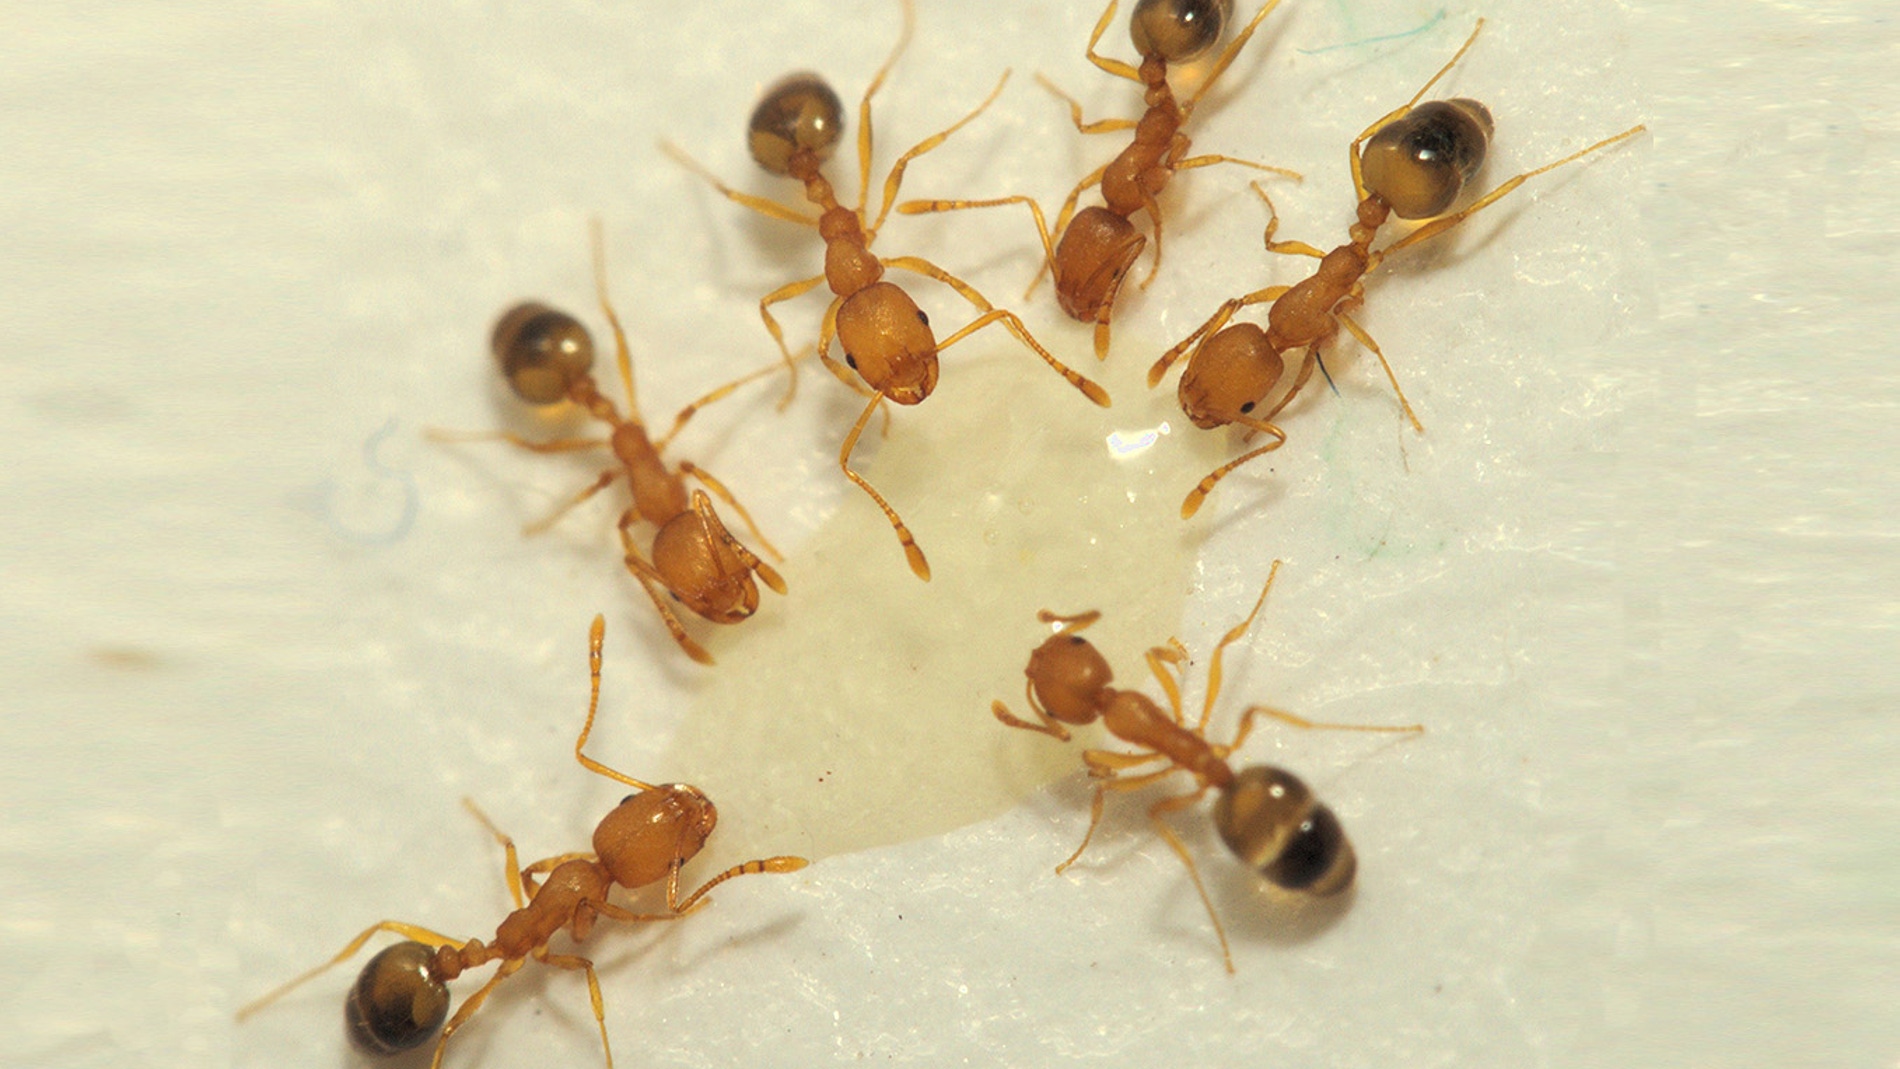 Un algoritmo inspirado en los caminos descartados por las hormigas